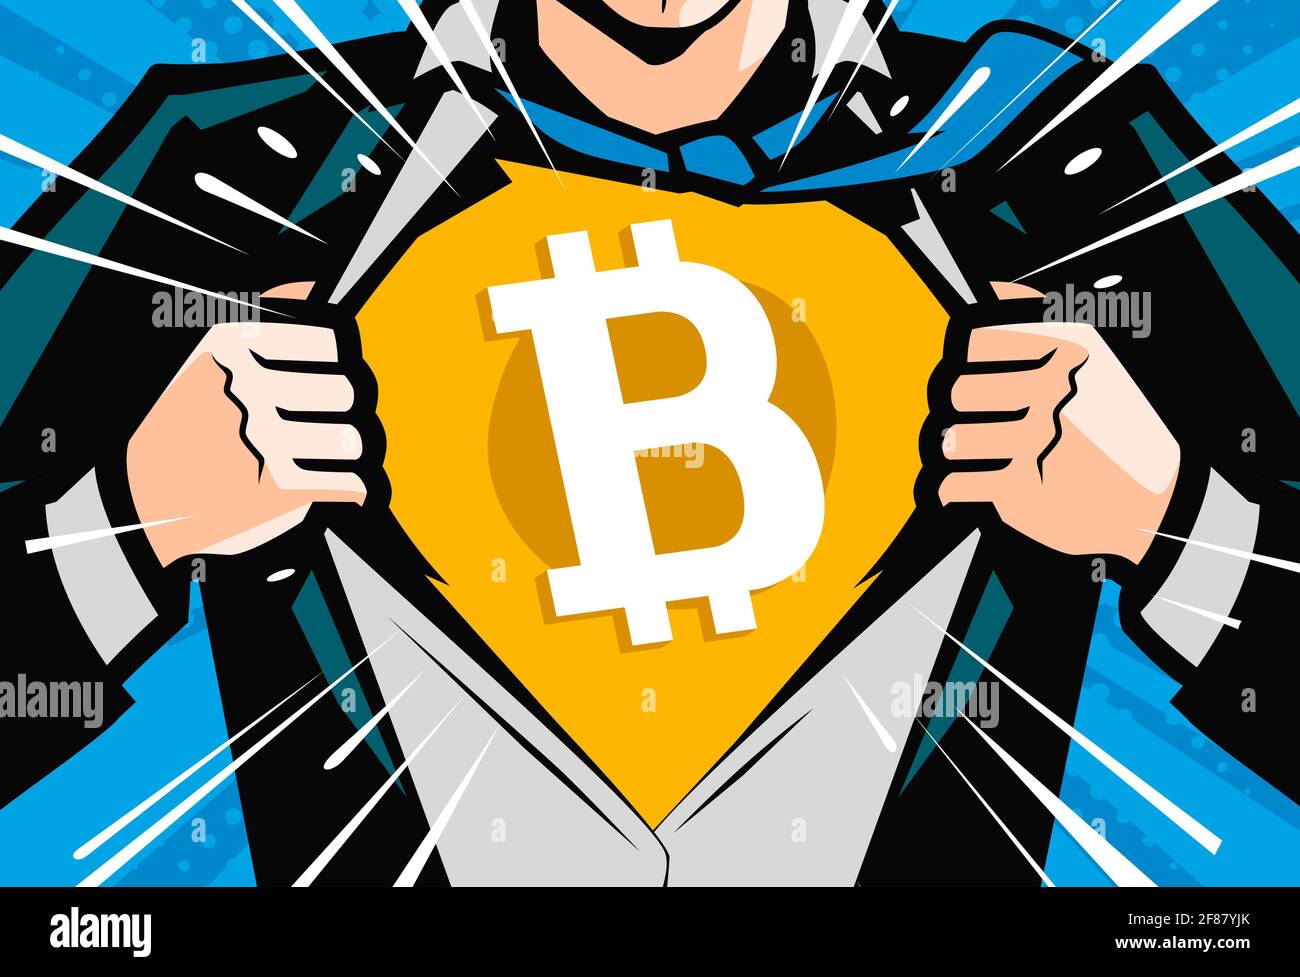 Krypto-Währungssymbol, Bitcoin-Zeichen. Superhelden oder Geschäftsleute, die Hemd in stiller Pop-Art-Comics zerrissen haben Stock Vektor